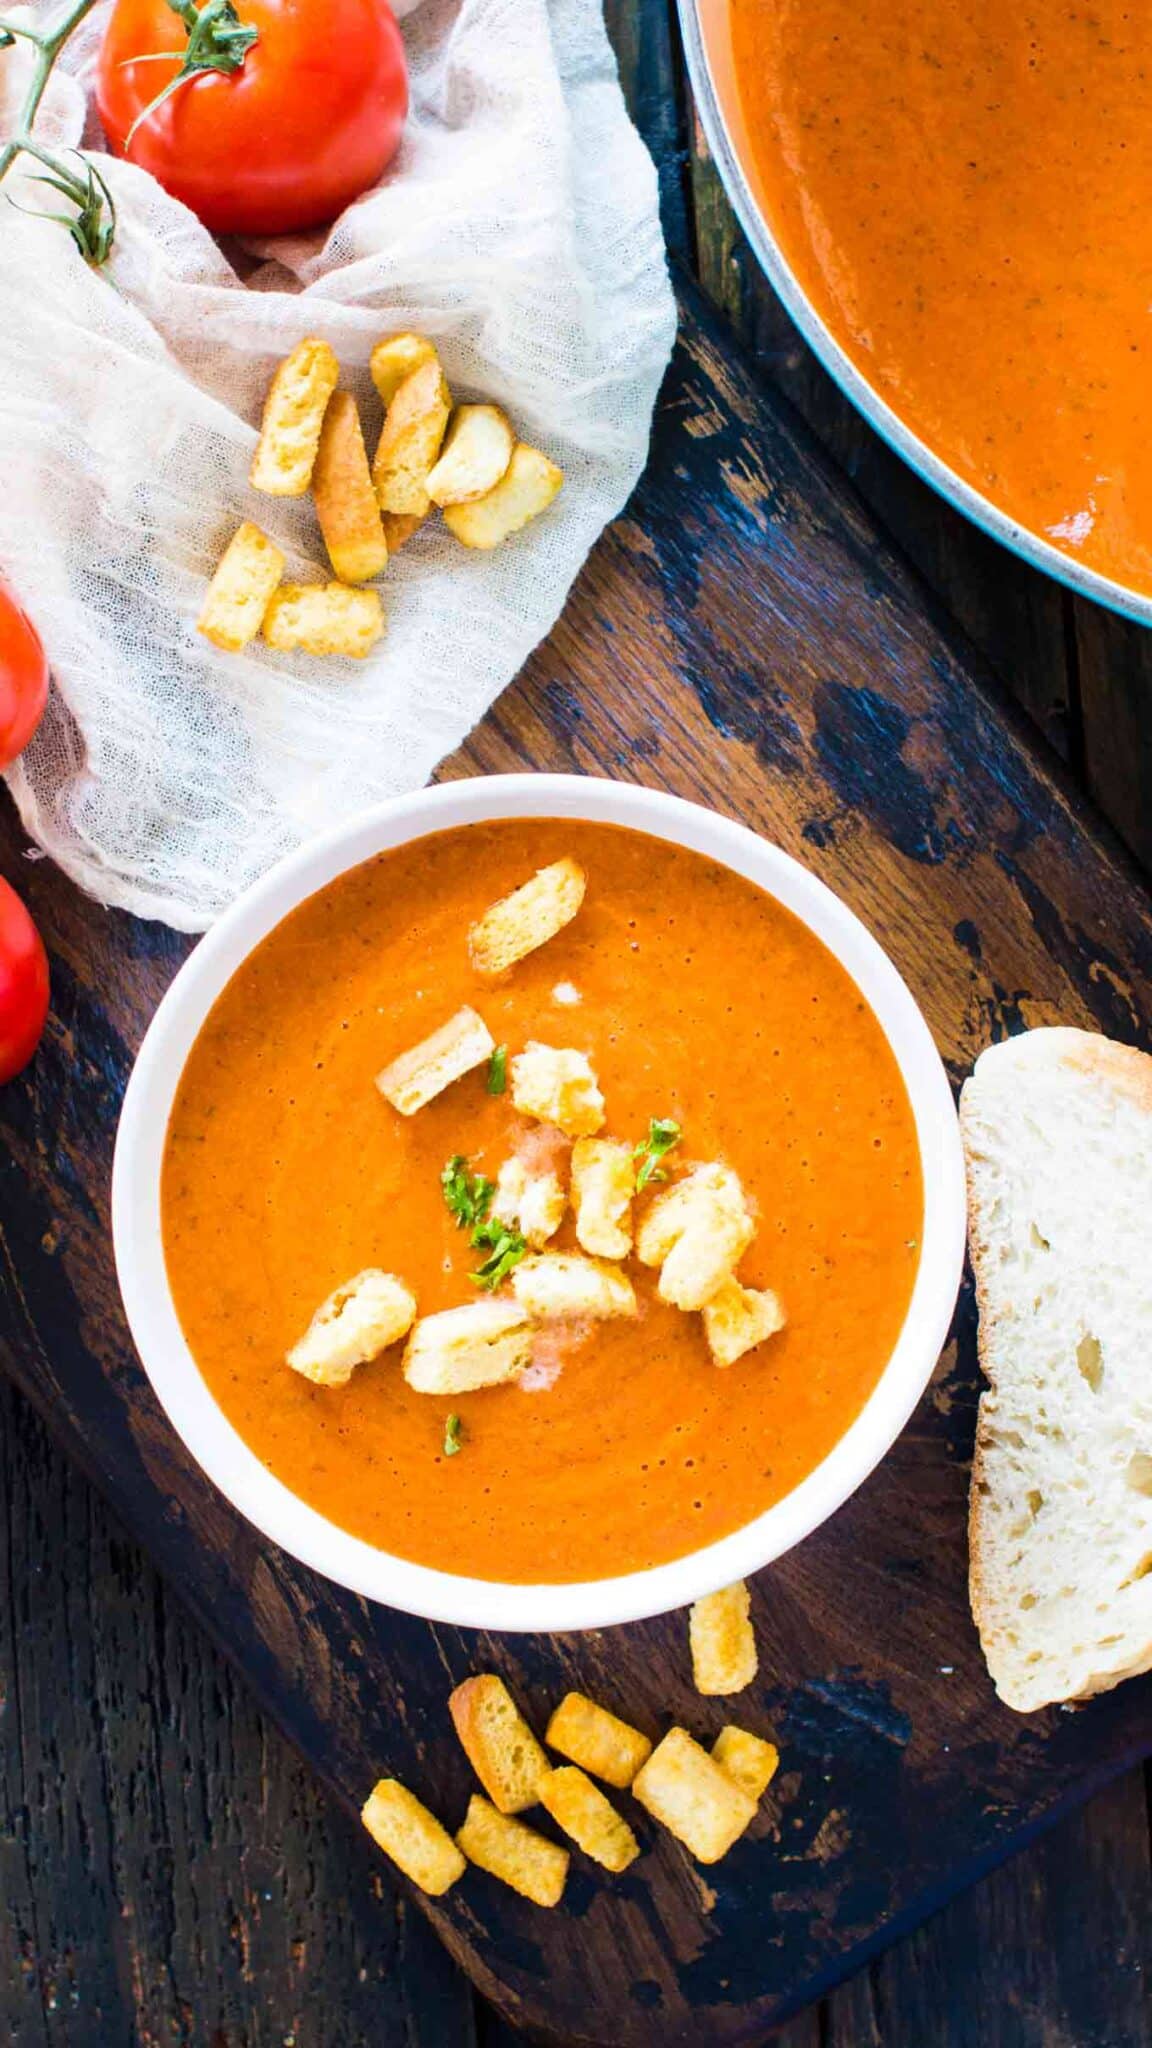 Panera Bread™ Tomato Soup Copycat Recipe Recipe - (4.1/5)